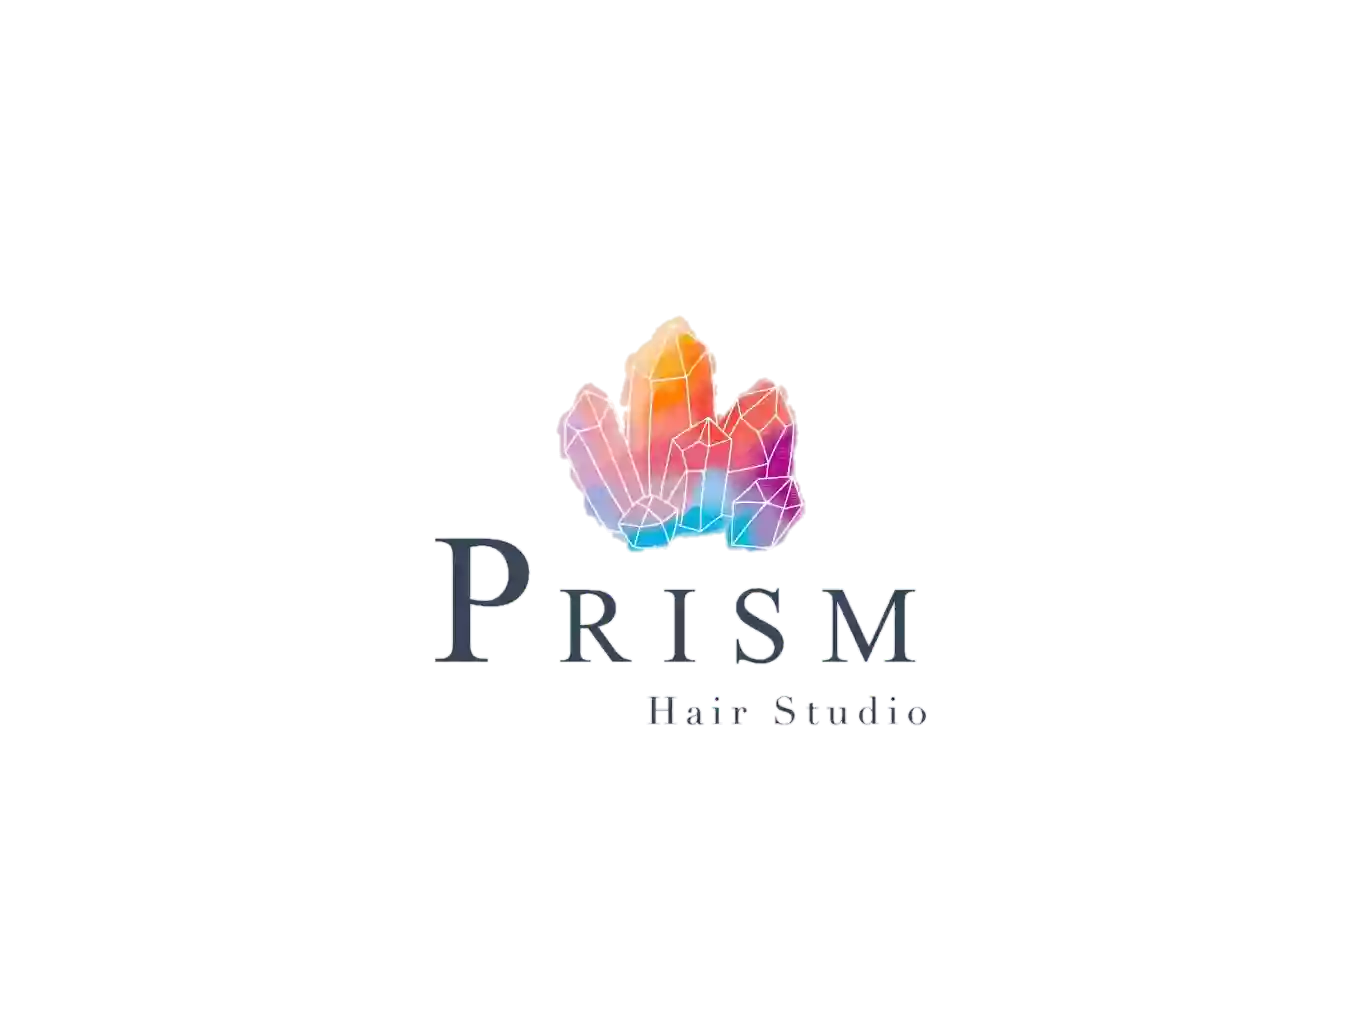 Prism Hair Studio in Ogunquit Maine